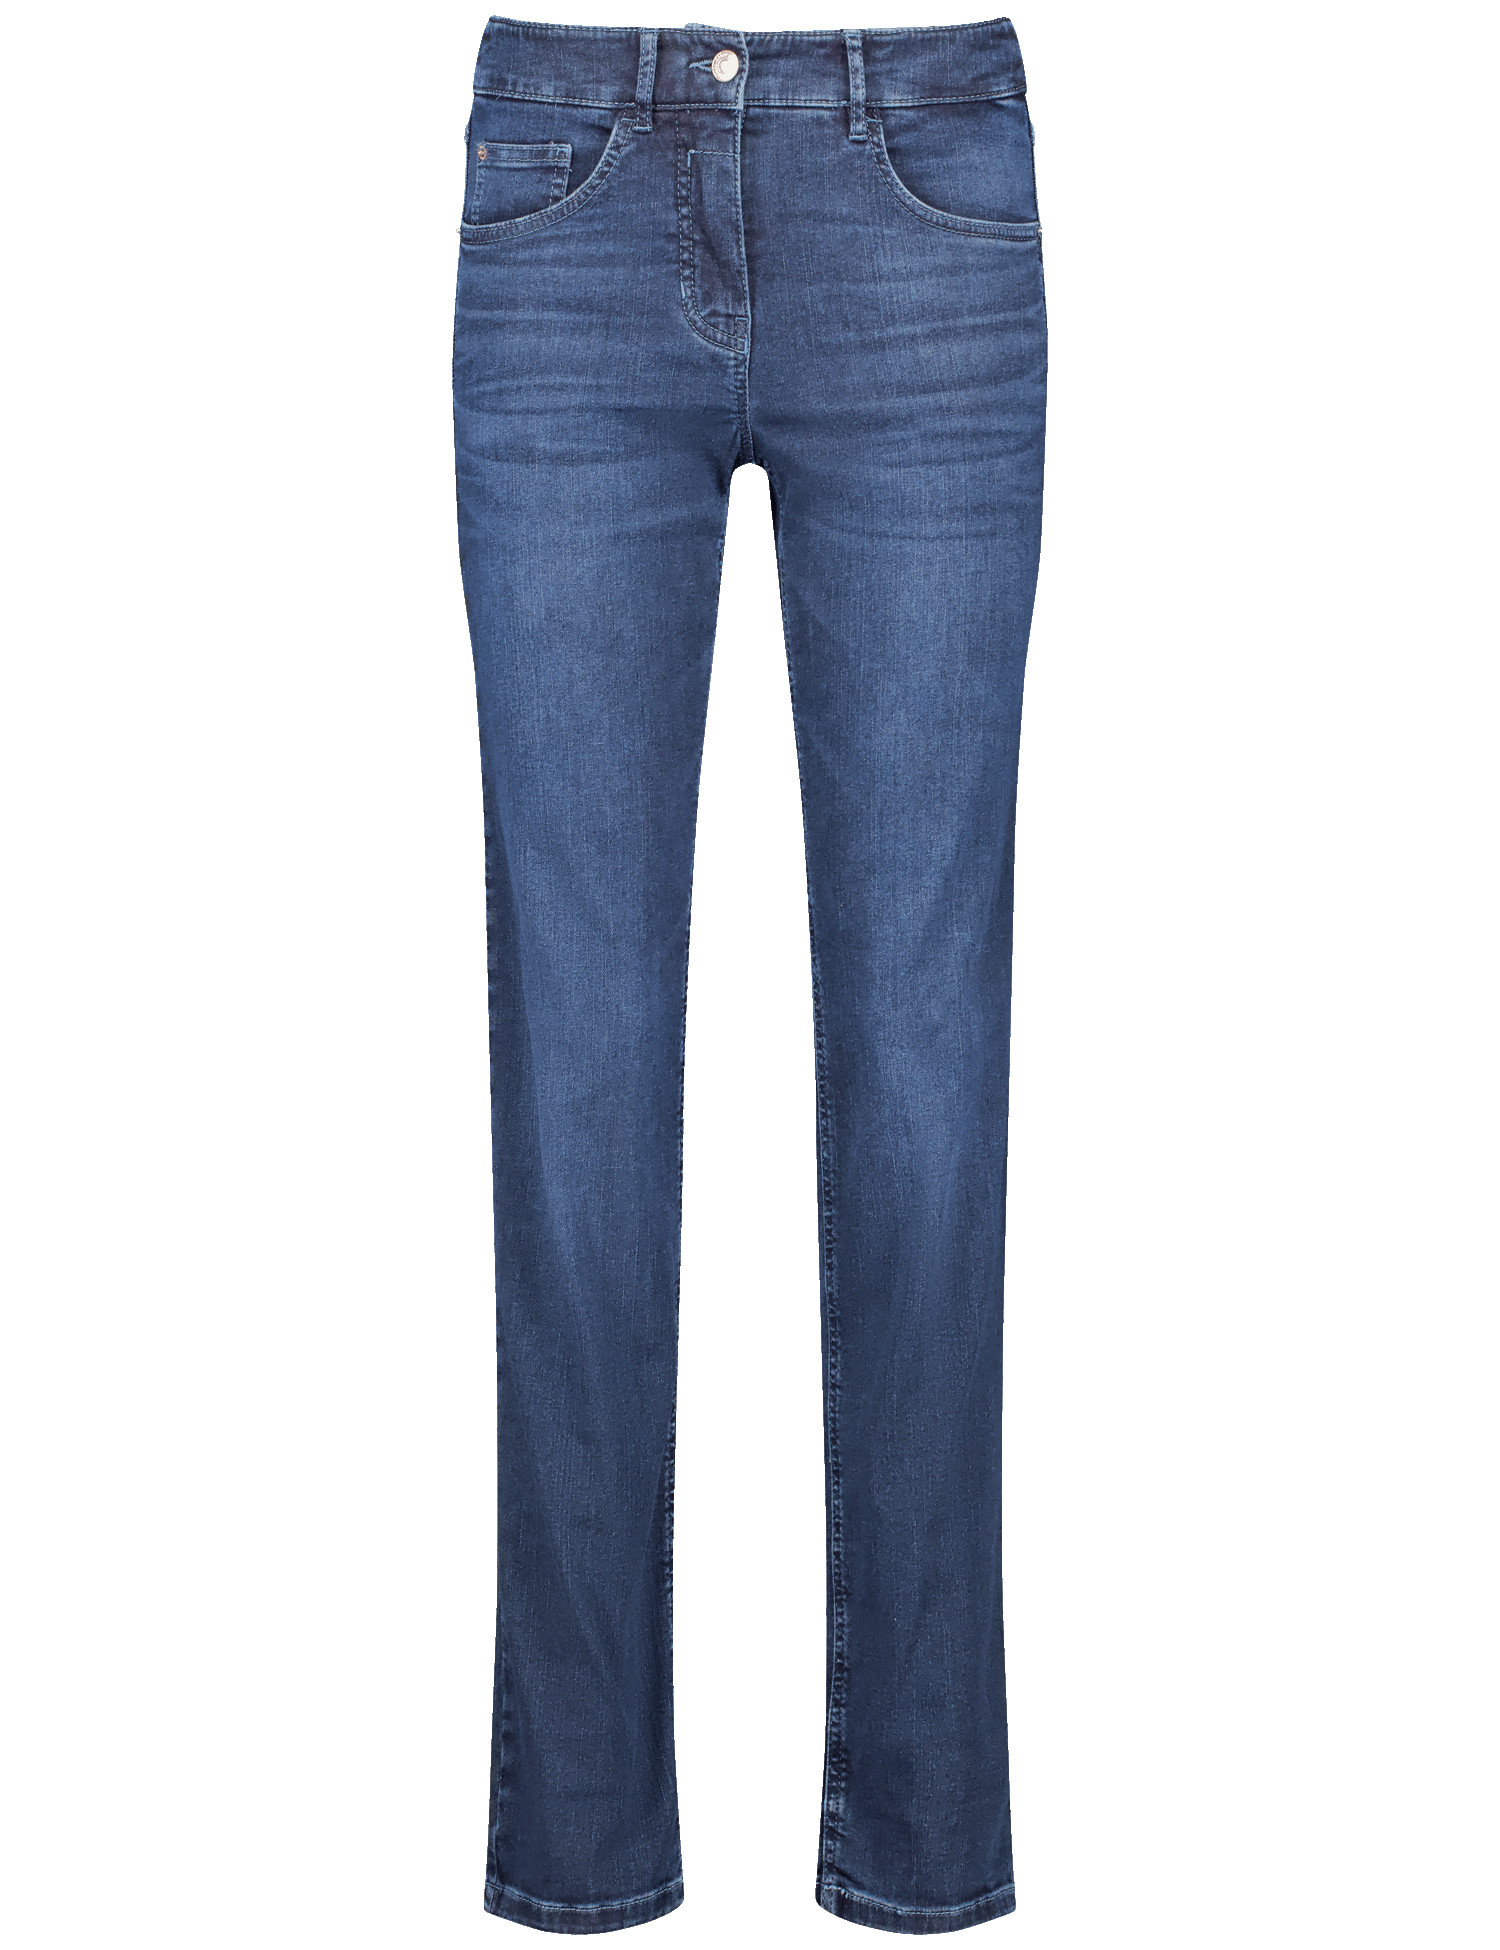 Damen-Jeans mit leicht ausgestelltem Bein aus Baumwoll-Mix